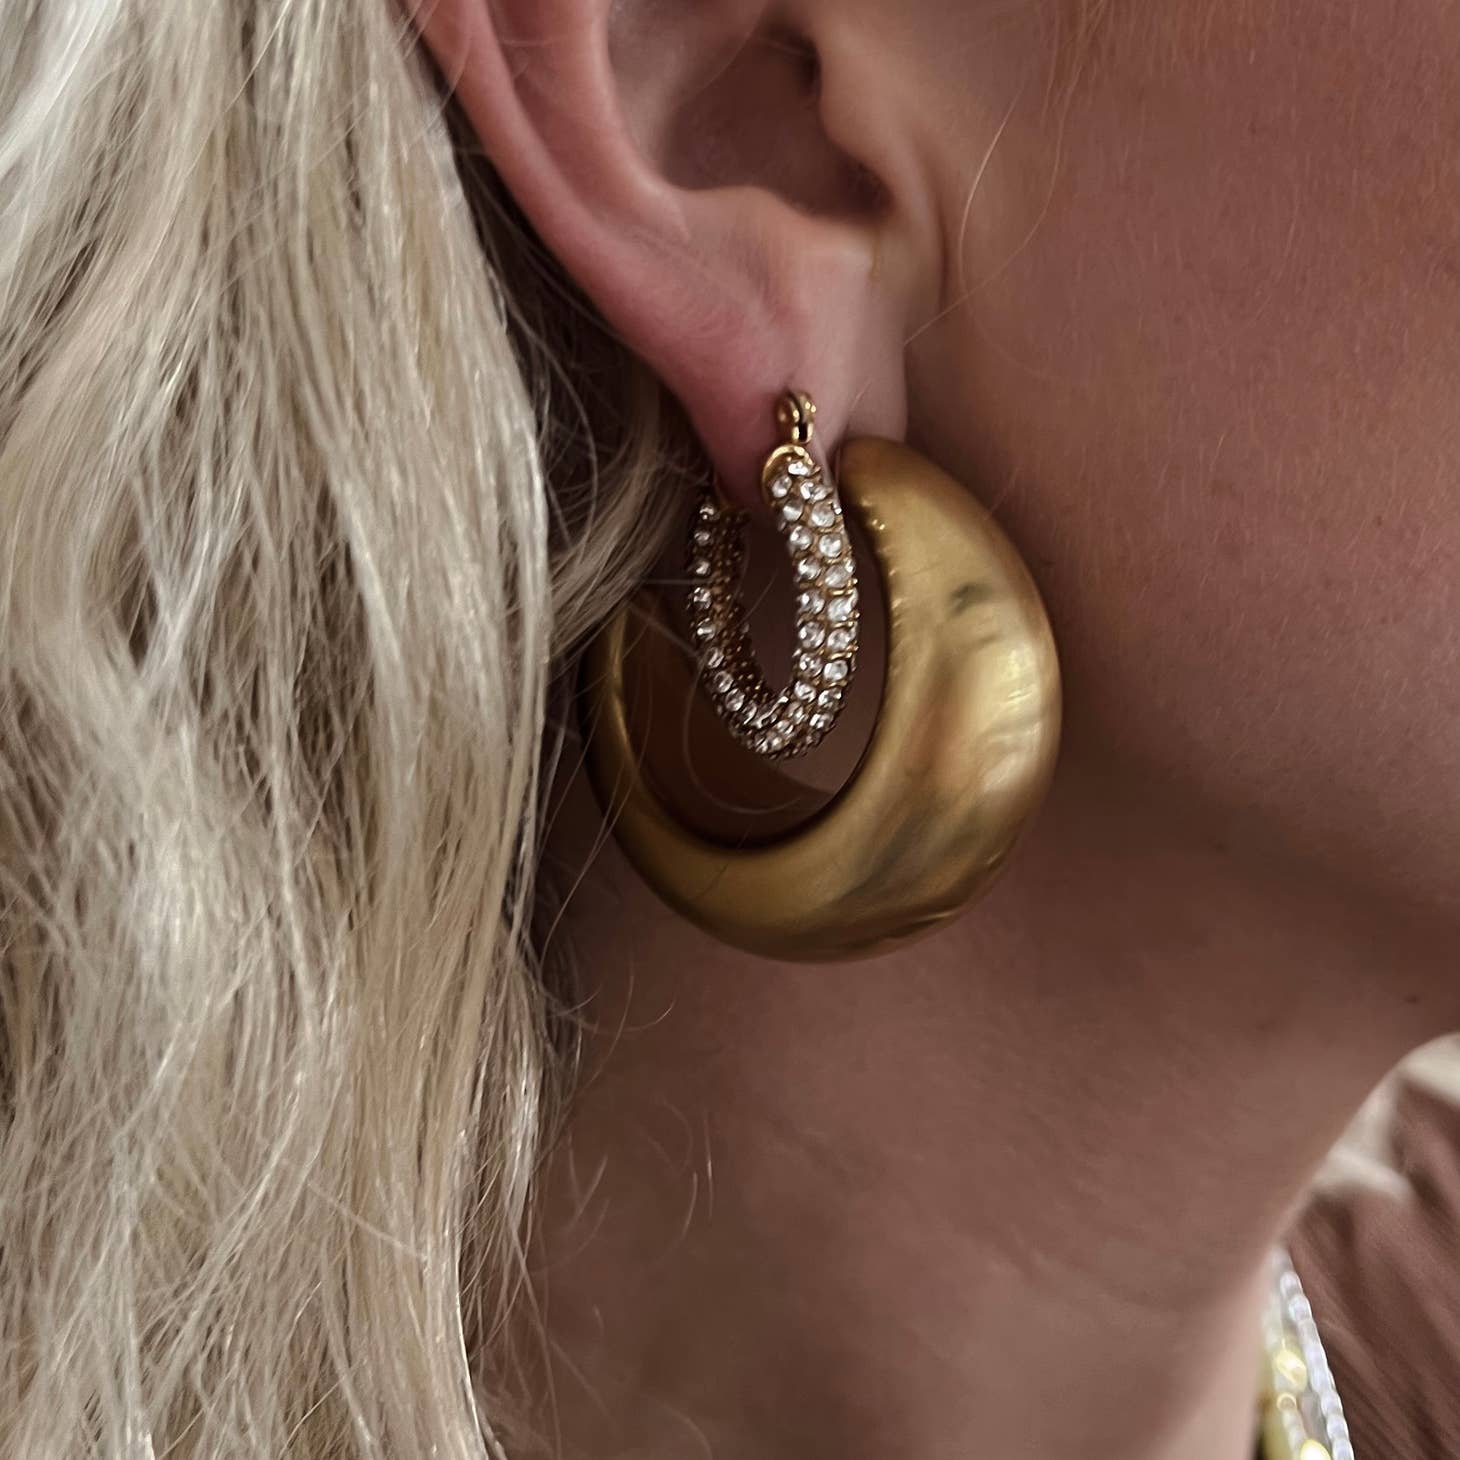 Beljoy: Evangeline Diamond Crystal Earrings